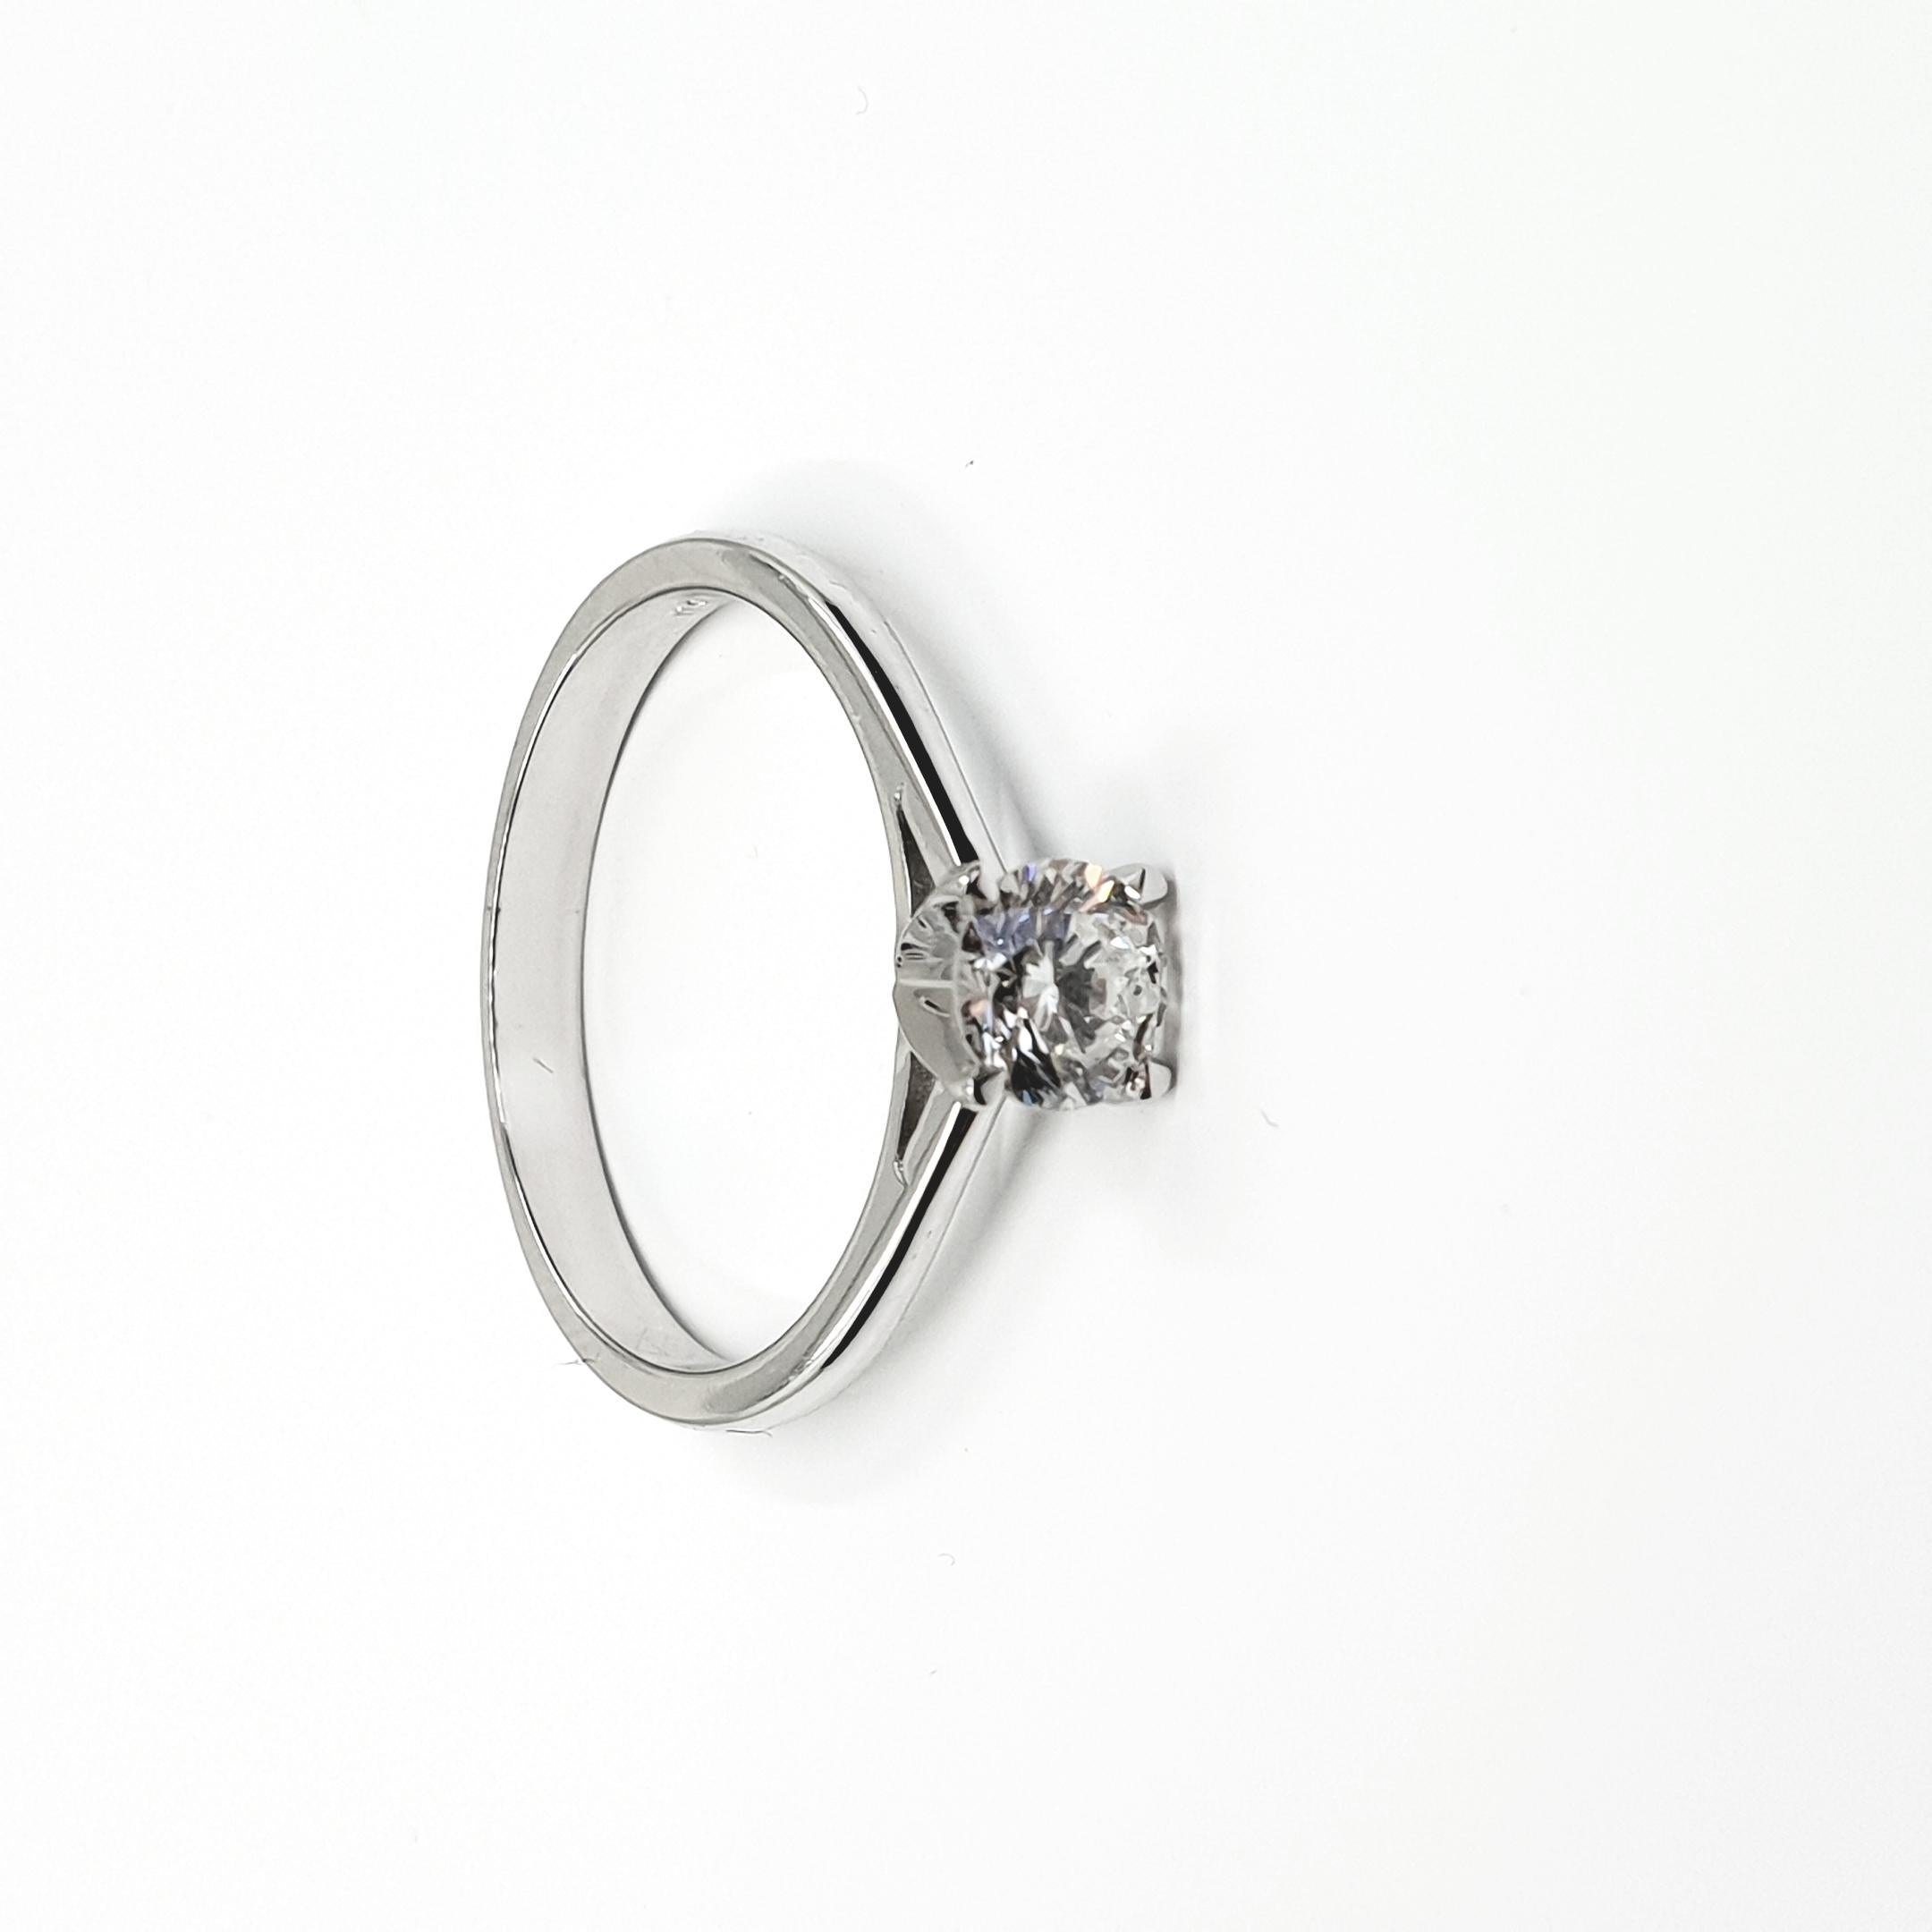 GIA-zertifizierter Diamant 0,50 I/VS2 Solitär-Ring 750 Gold in 4 Zackenfassung

Diamantring mit feinem Brillantschliff und Solitär in 18k Weißgold.
Vierzackige Fassung. Hochmontierter Diamant. 
Größe 54.

5 C`s:

Zertifikat: GIA
Karat: 0,50ct
Farbe: